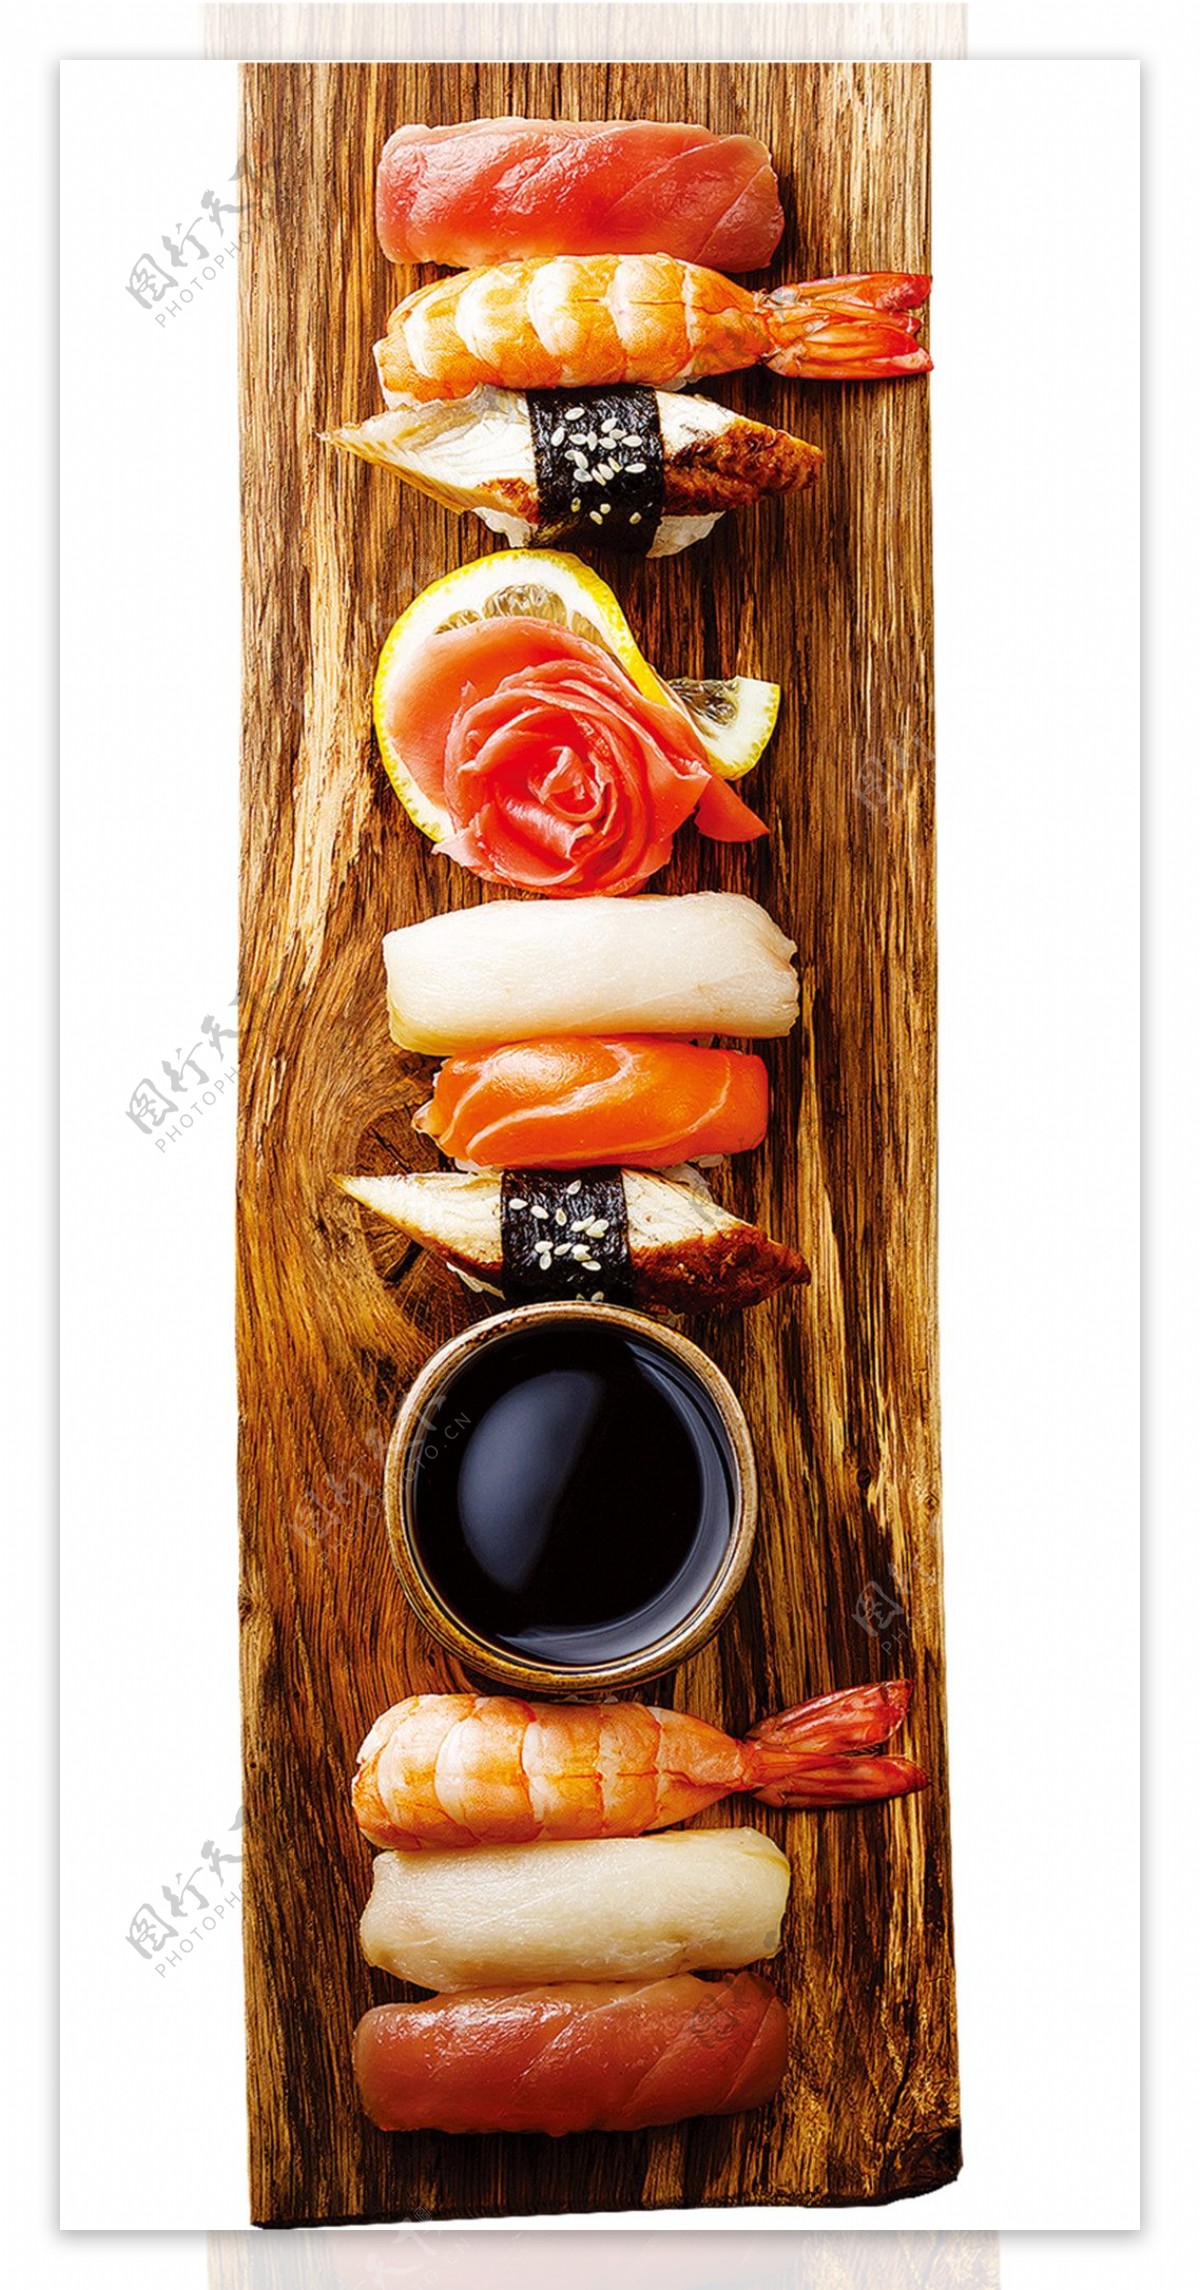 鲜美刺身日式料理美食产品实物